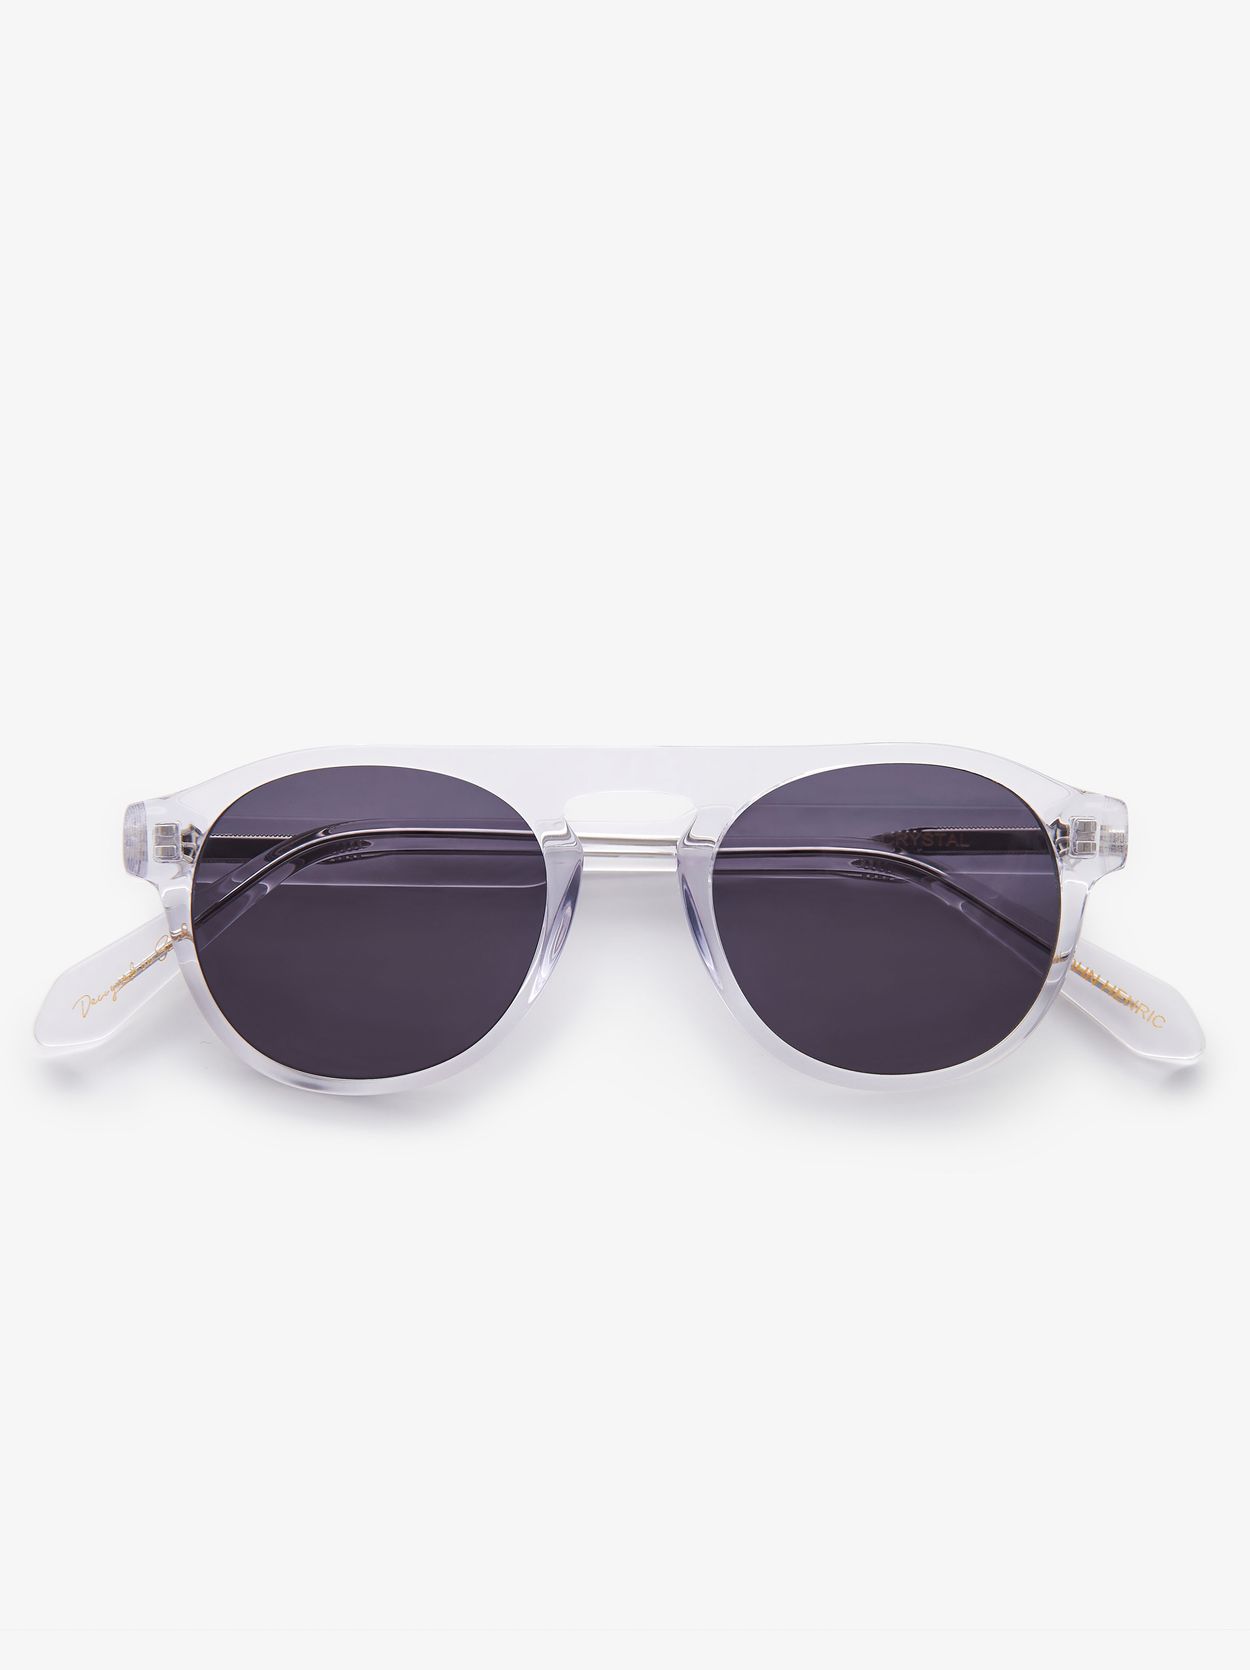 Crystal Sunglasses Marbella